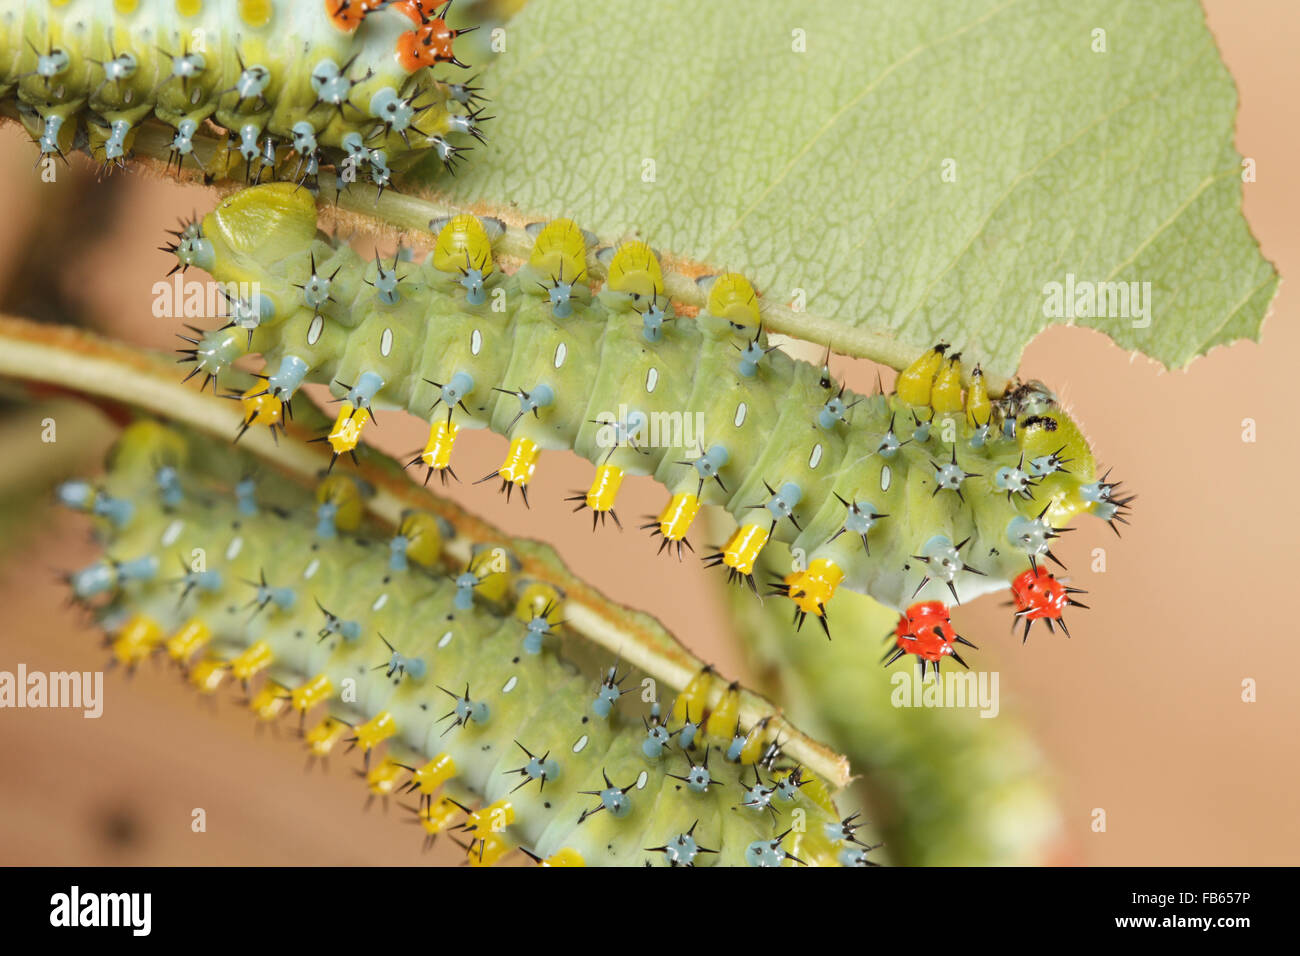 Cuarto estadio larvario, las orugas de la polilla de cecropia, Hyalophora cecropia Foto de stock